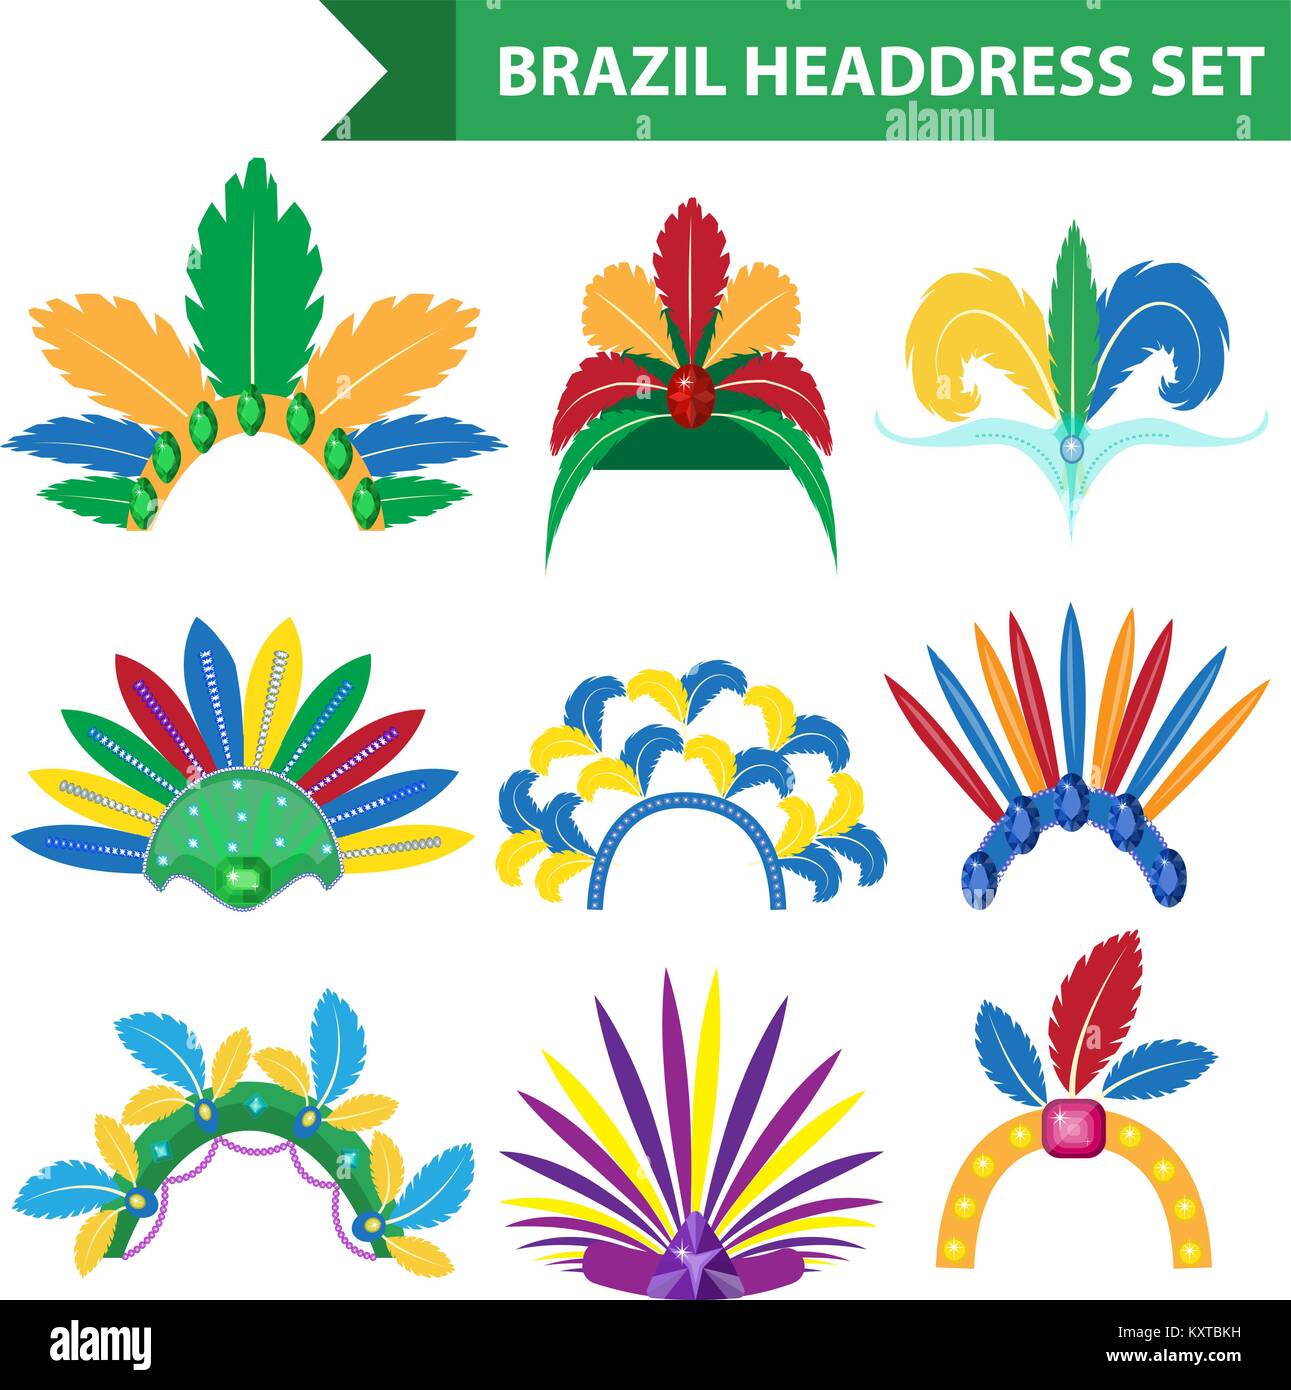 Brasilien Feather Stirnband Kopfschmuck Symbole Flat Style. Kopfbedeckung Karneval, Samba Festival headwear. Auf weissem Hintergrund. Vector Illustration. Stock Vektor